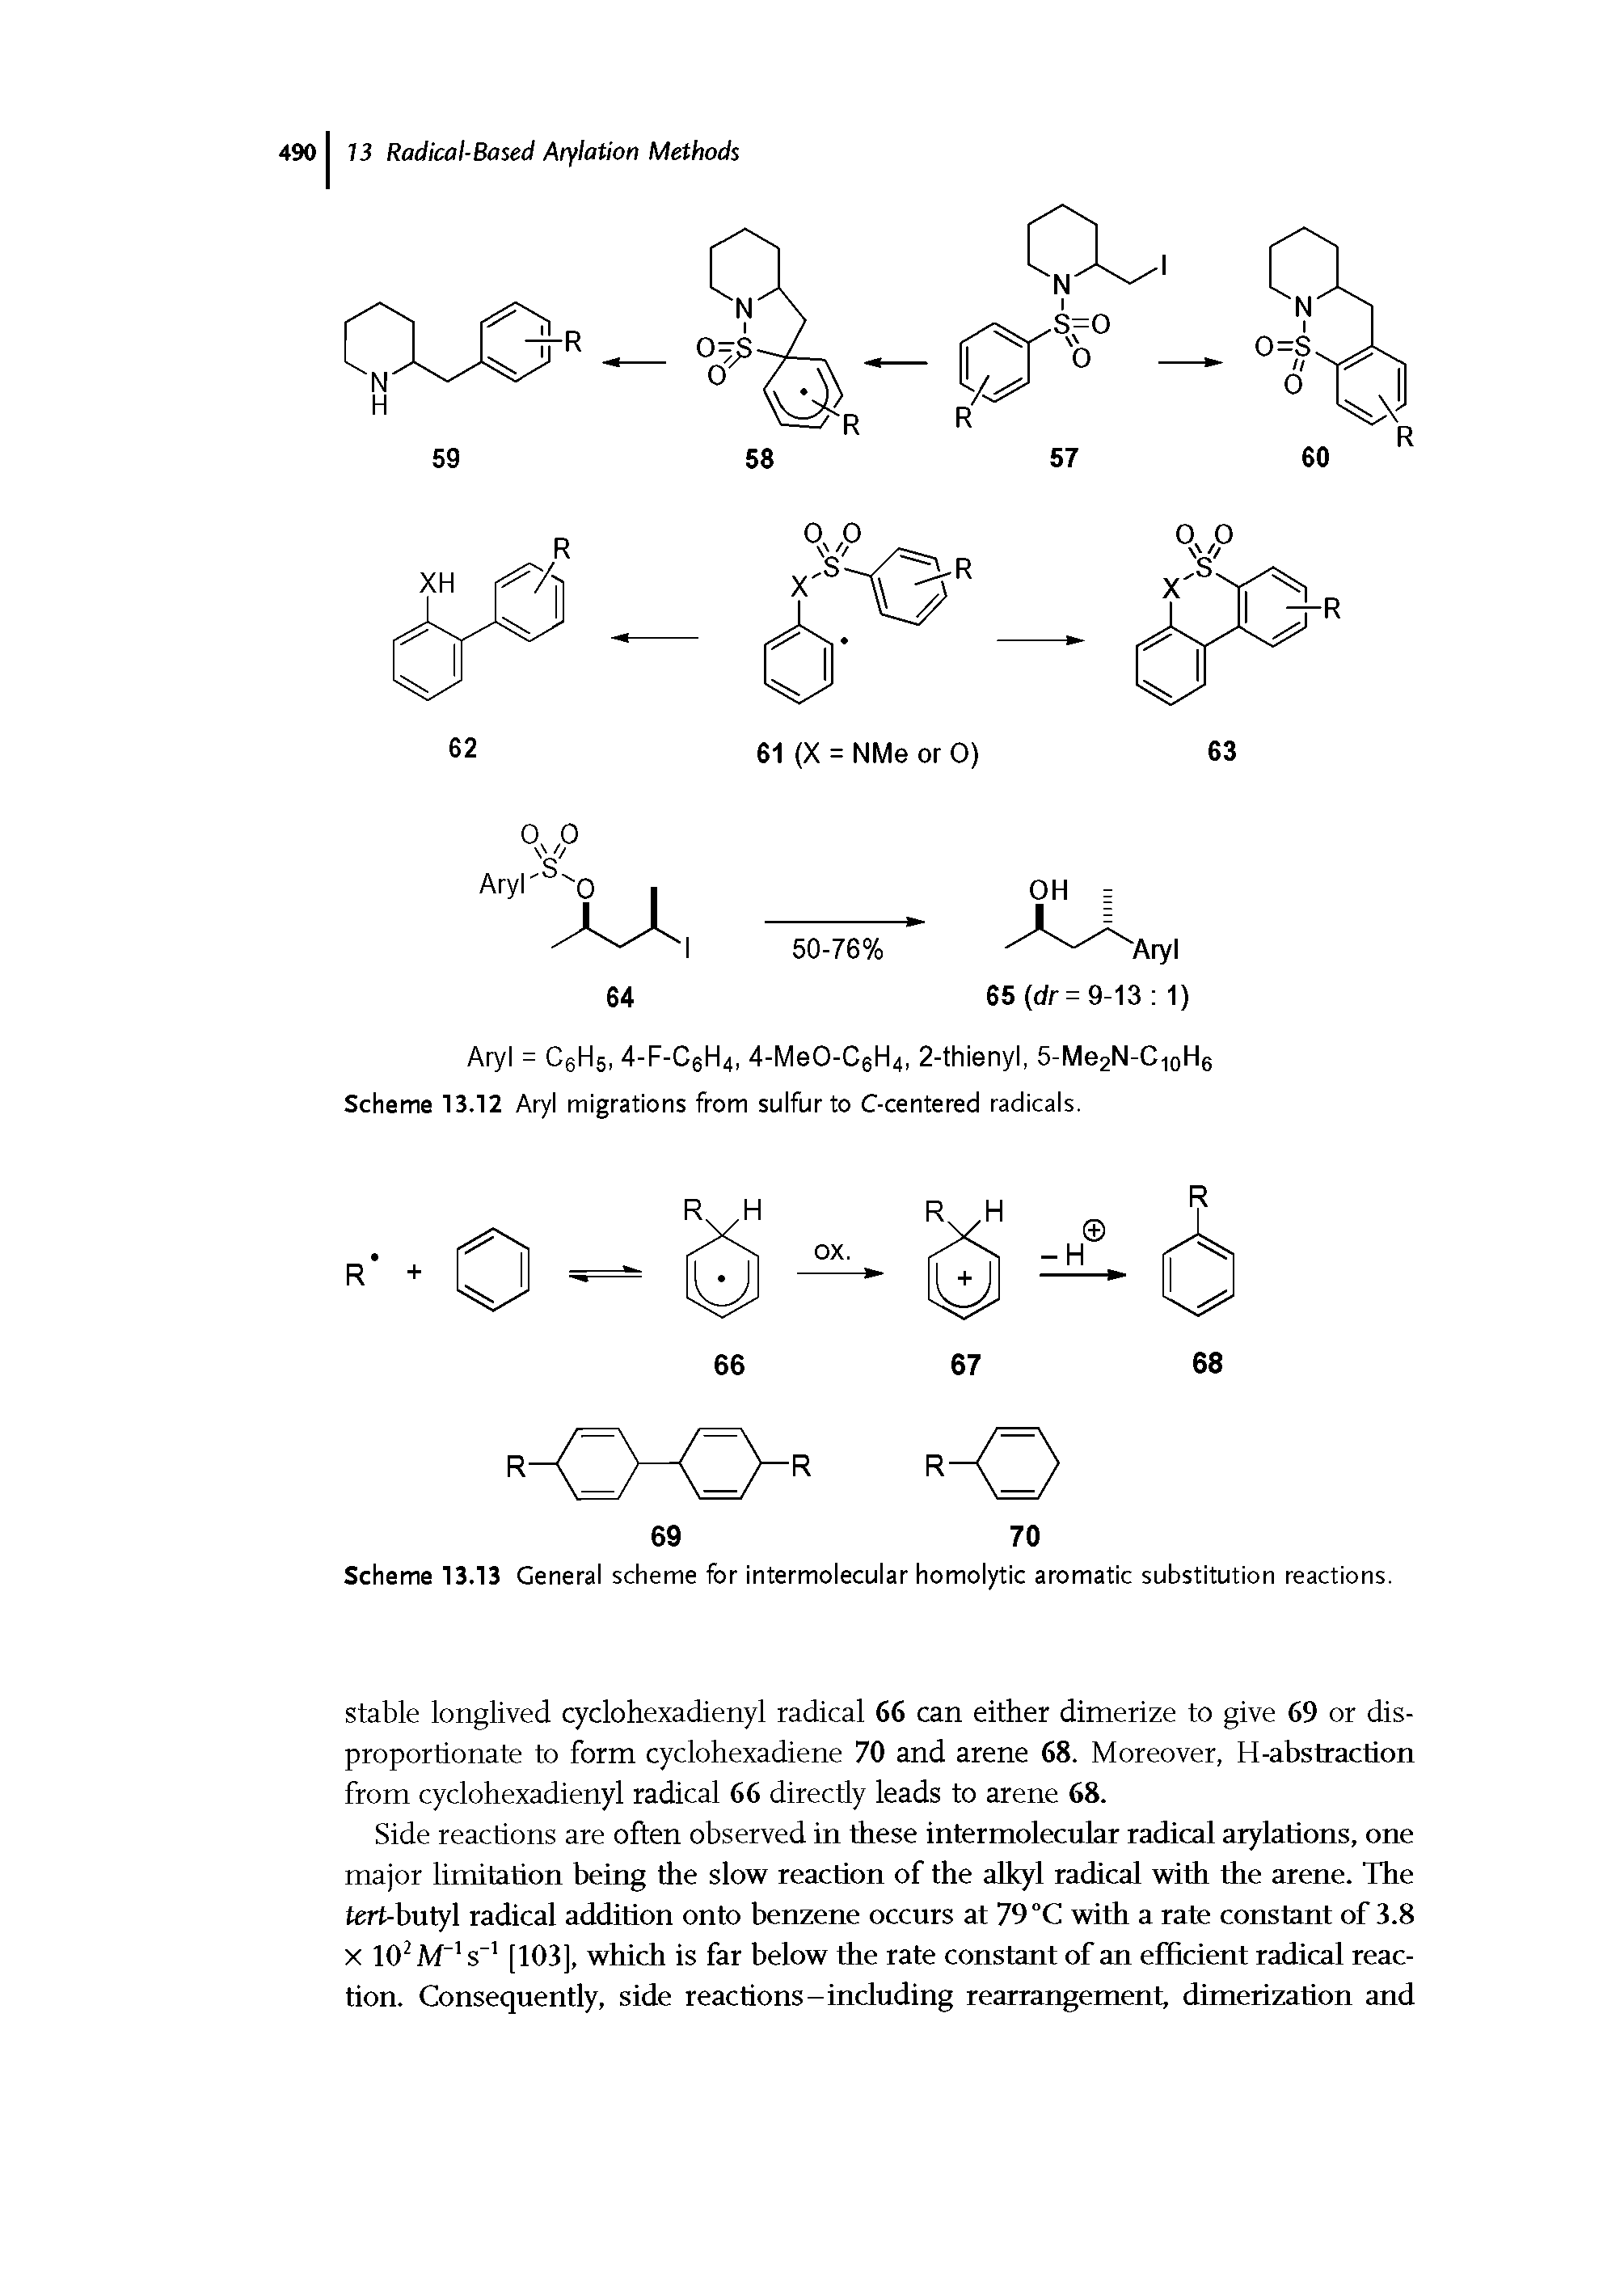 Scheme 13.13 General scheme for intermolecular homolytic aromatic substitution reactions.